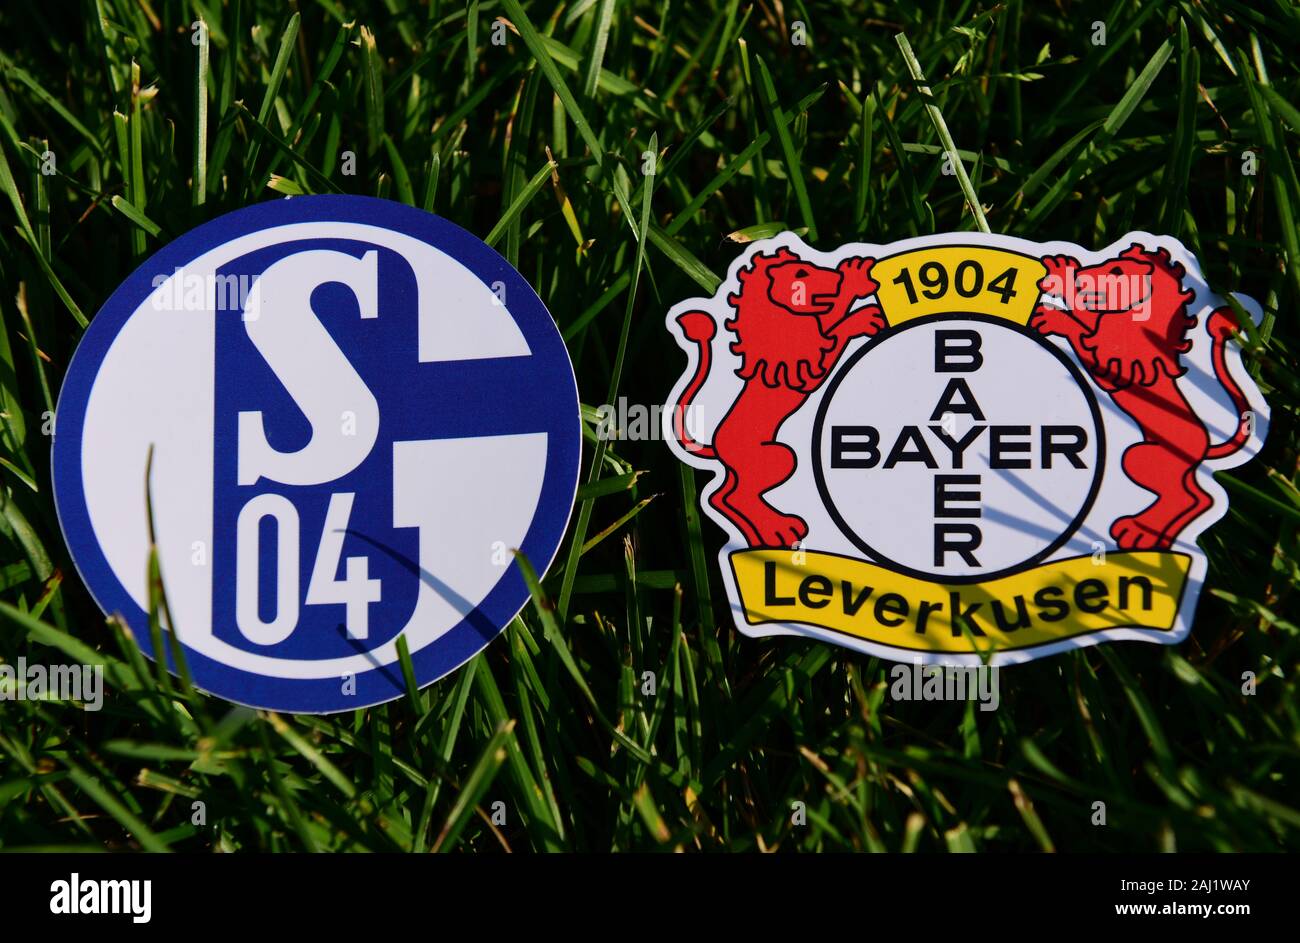 September 6, 2019, Munich, Germany. Emblems of German football clubs Bayer Leverkusen and Schalke 04 Gelsenkirchen on the green lawn Stock Photo